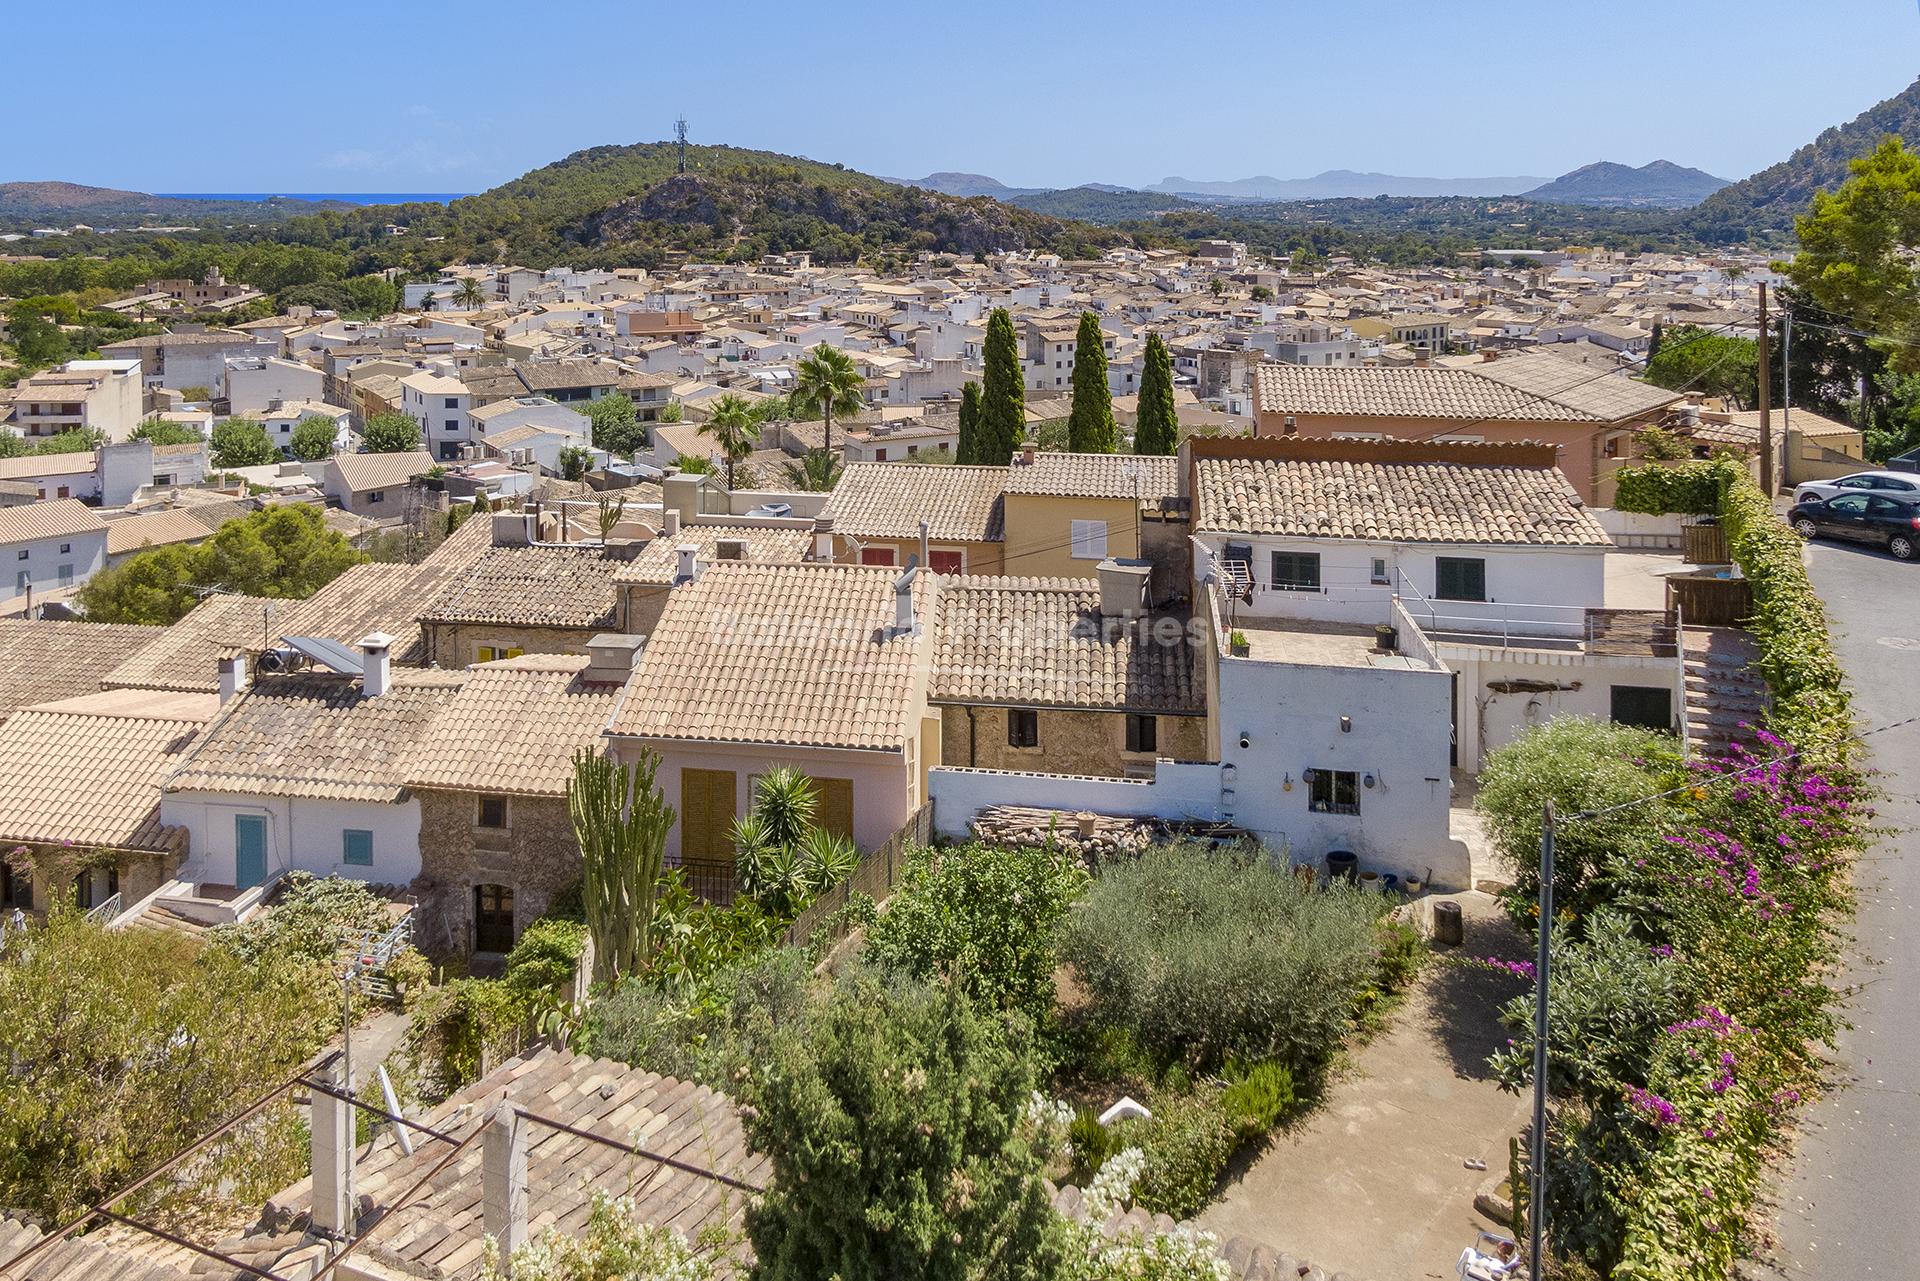 Posibilidad de crear una casa de ensueño con vistas inmejorables en Pollensa, Mallorca